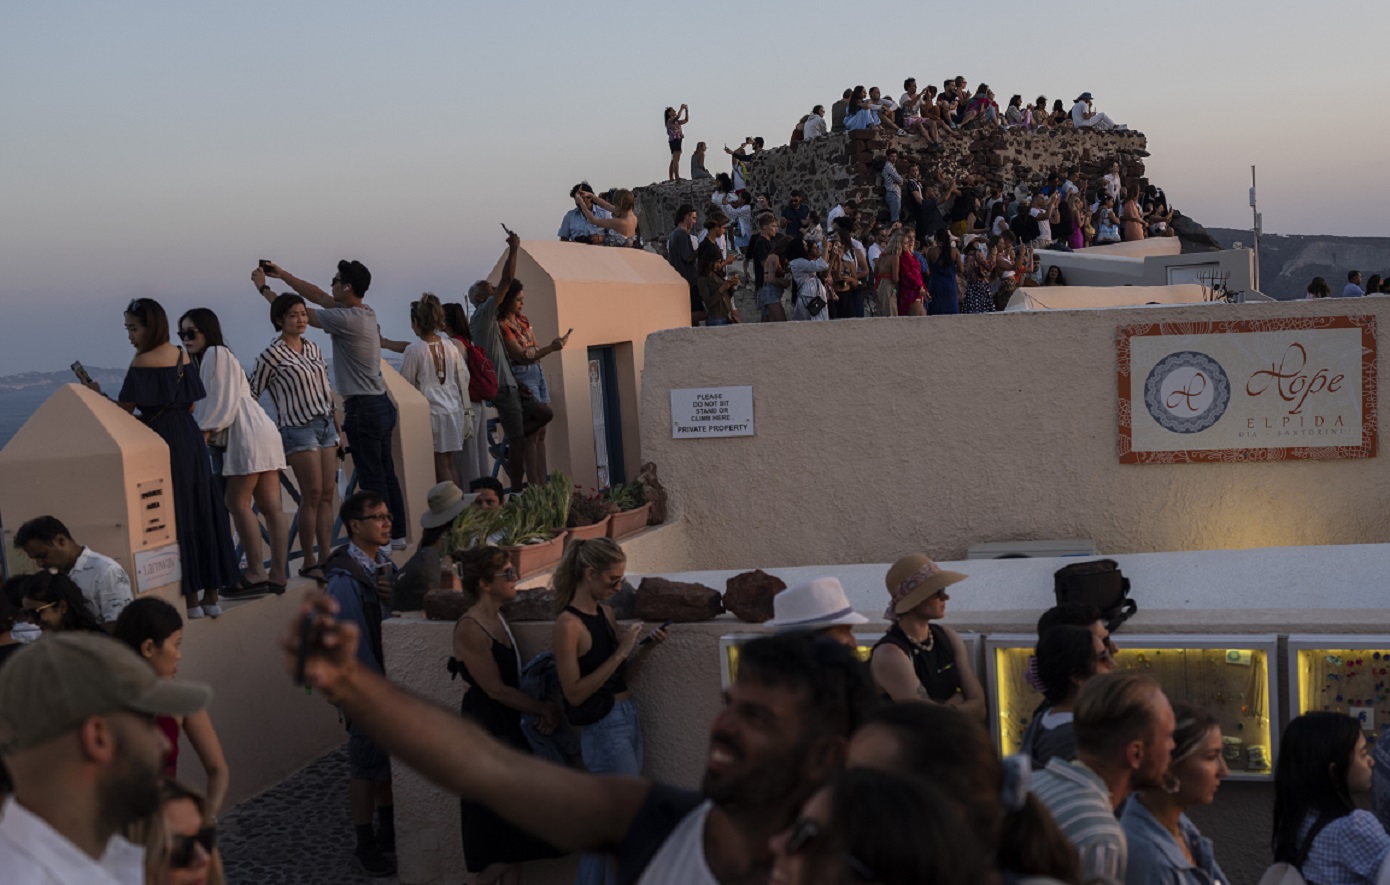 Σαντορίνη: Στο όριο της «ασφυξίας» το πιο «ινσταγκραμικό» νησί της Ελλάδας λέει το AFP